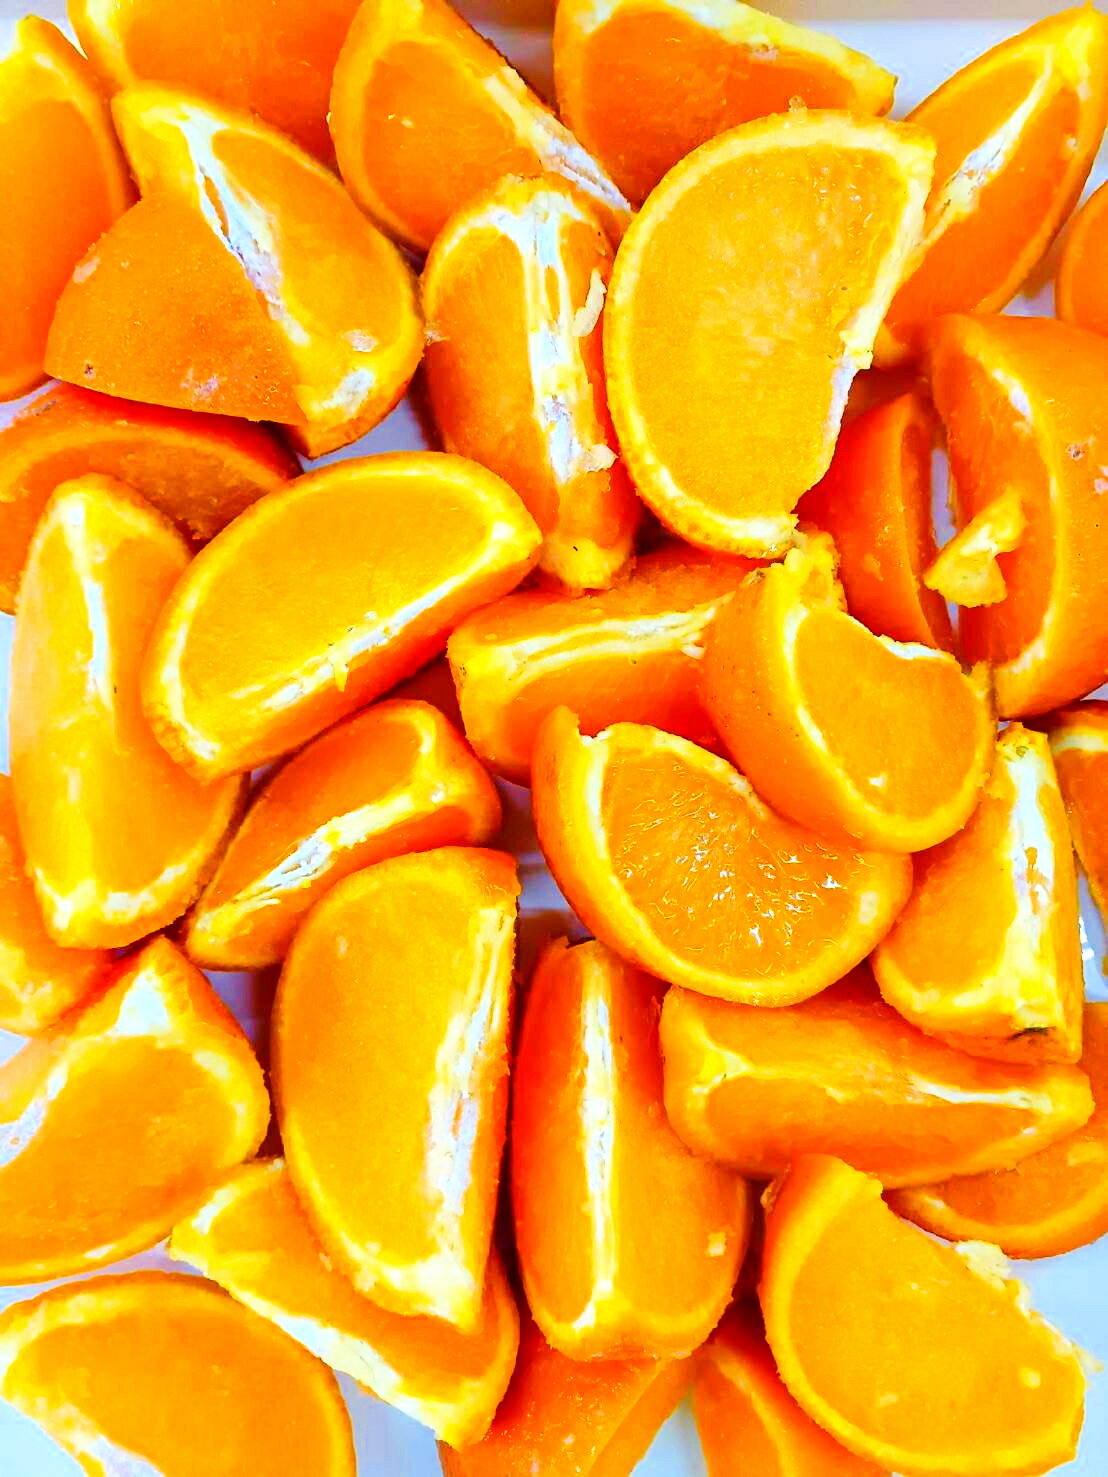 【KIMONO FRUITS】国産冷凍オレンジ 清見オレンジ 1/6カット 5kg 1000g 5 広島県産 清見オレンジ ノーワックス品 バラ凍結で使いやすいです 国産清見みかん